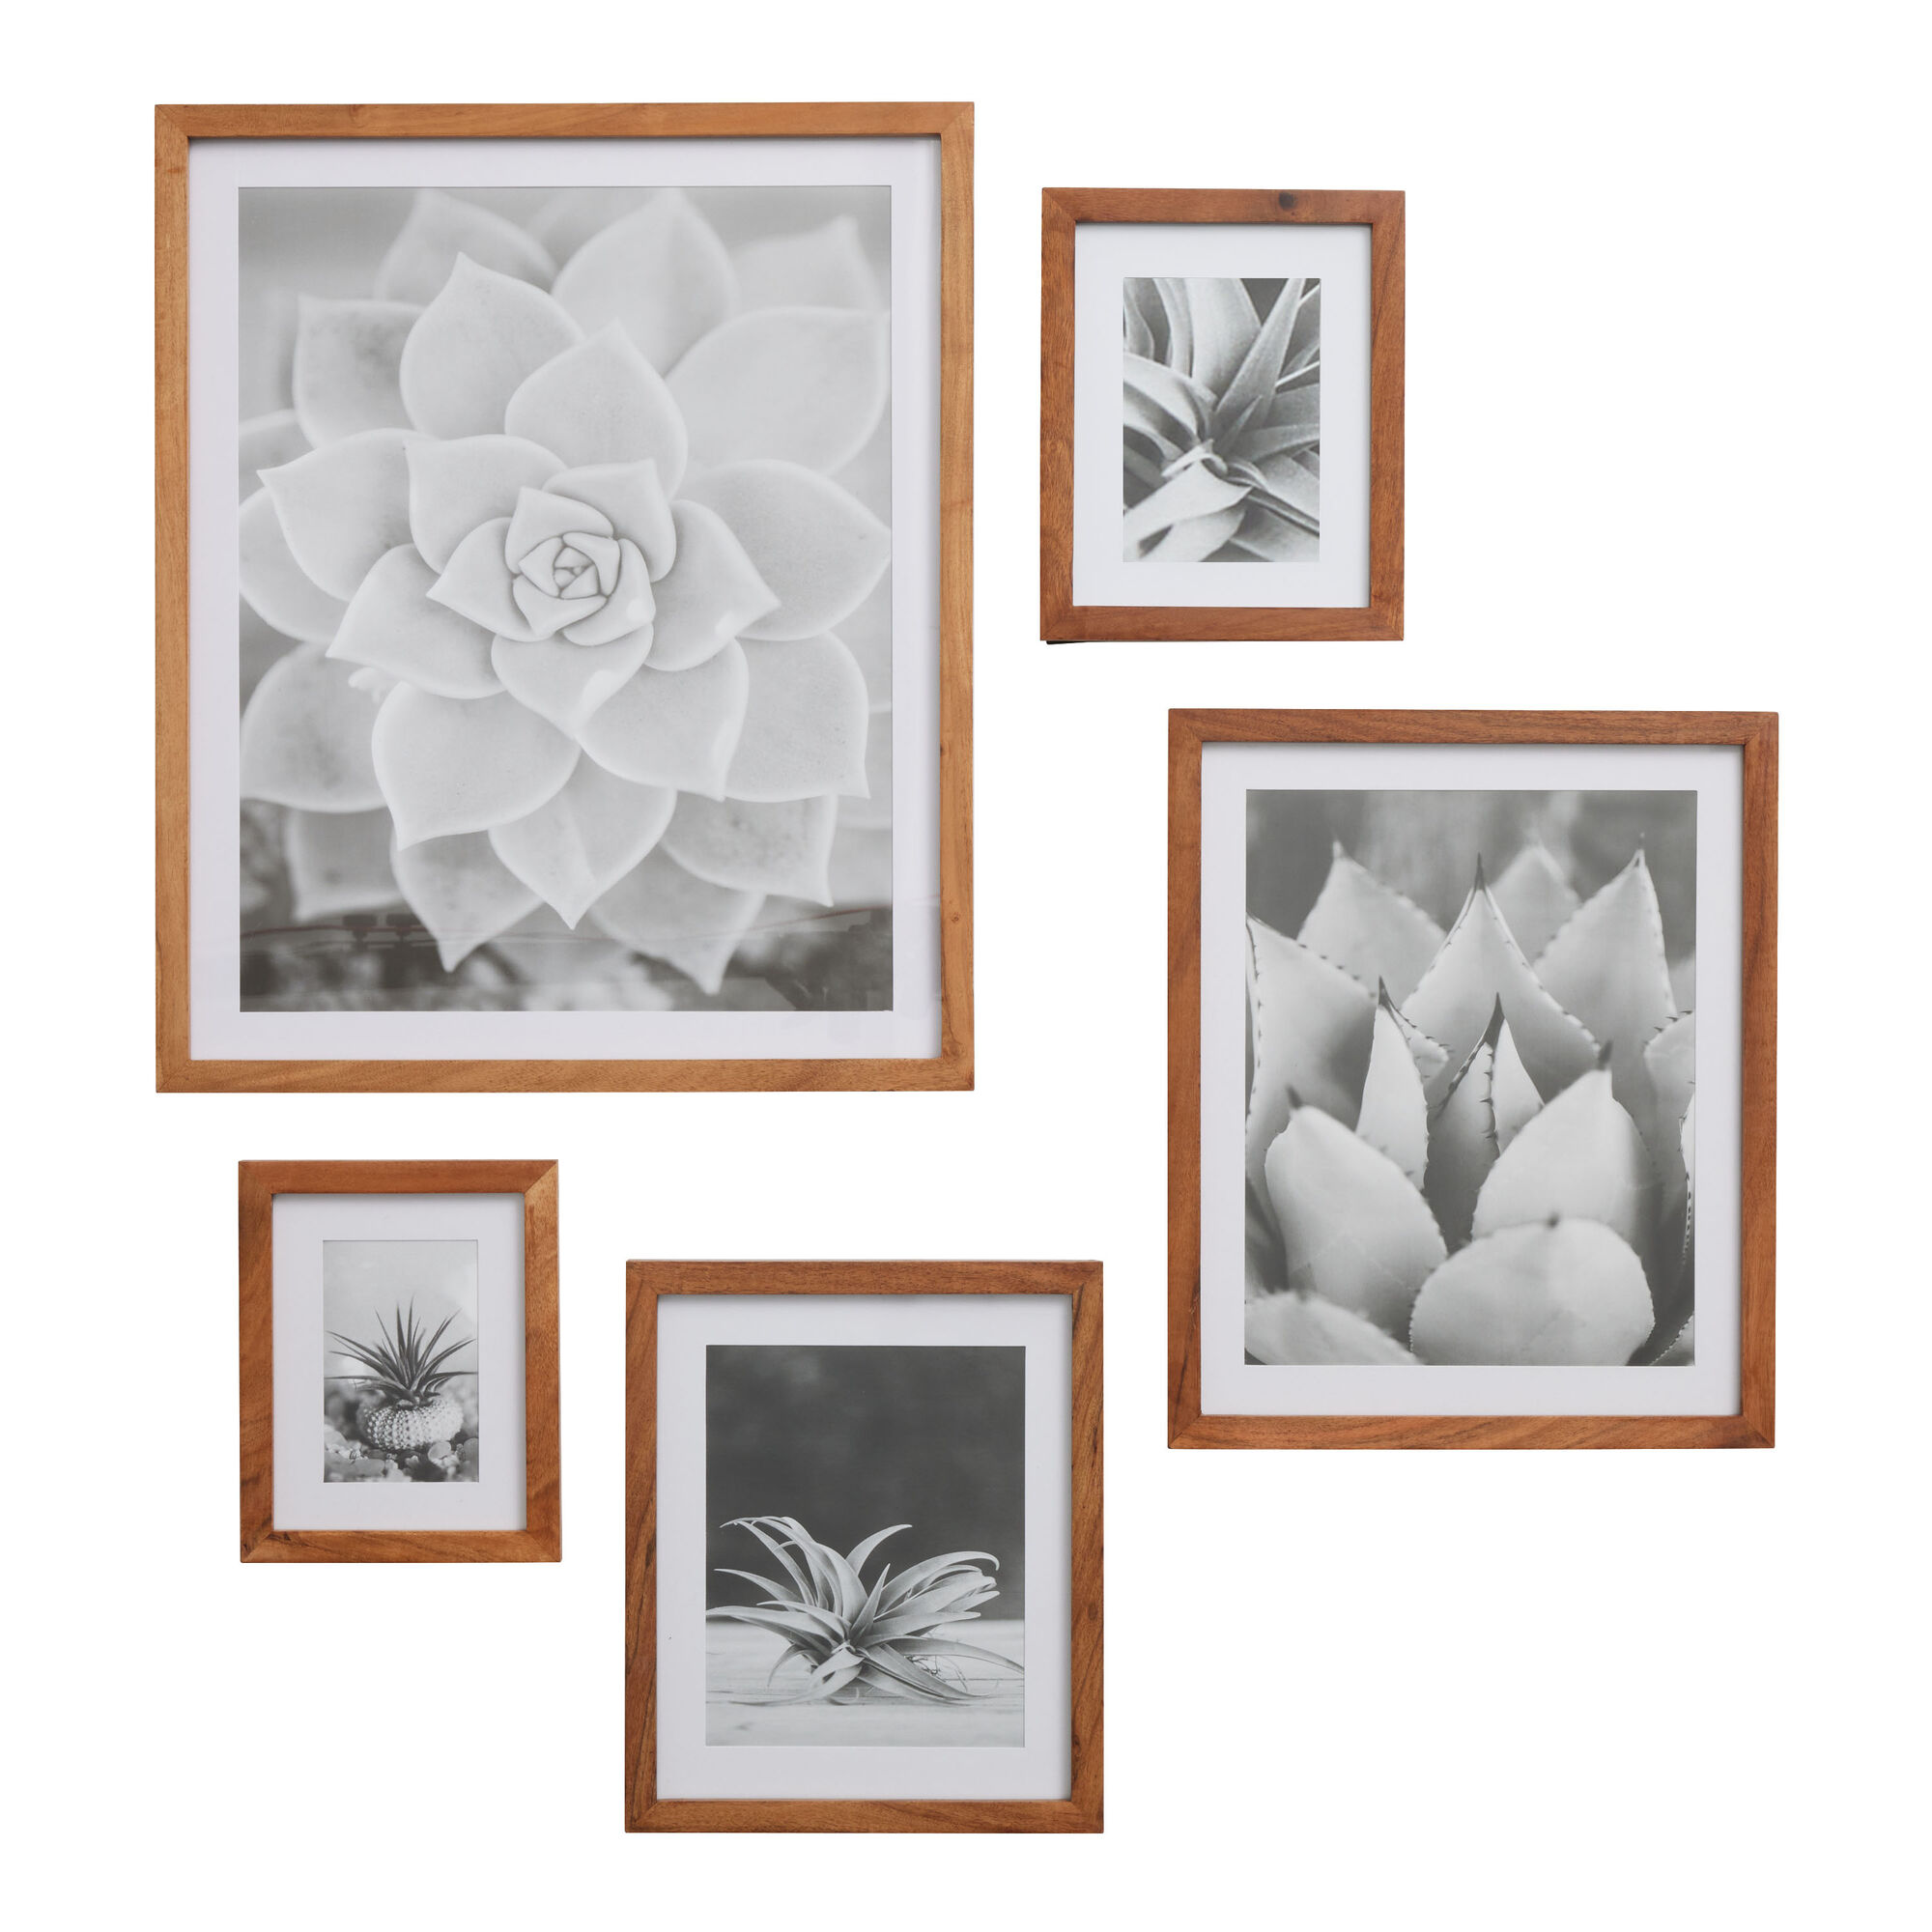 Handmade Natural Fiber Photo Frames (4x6 and 3x5) - Autumn Spirit